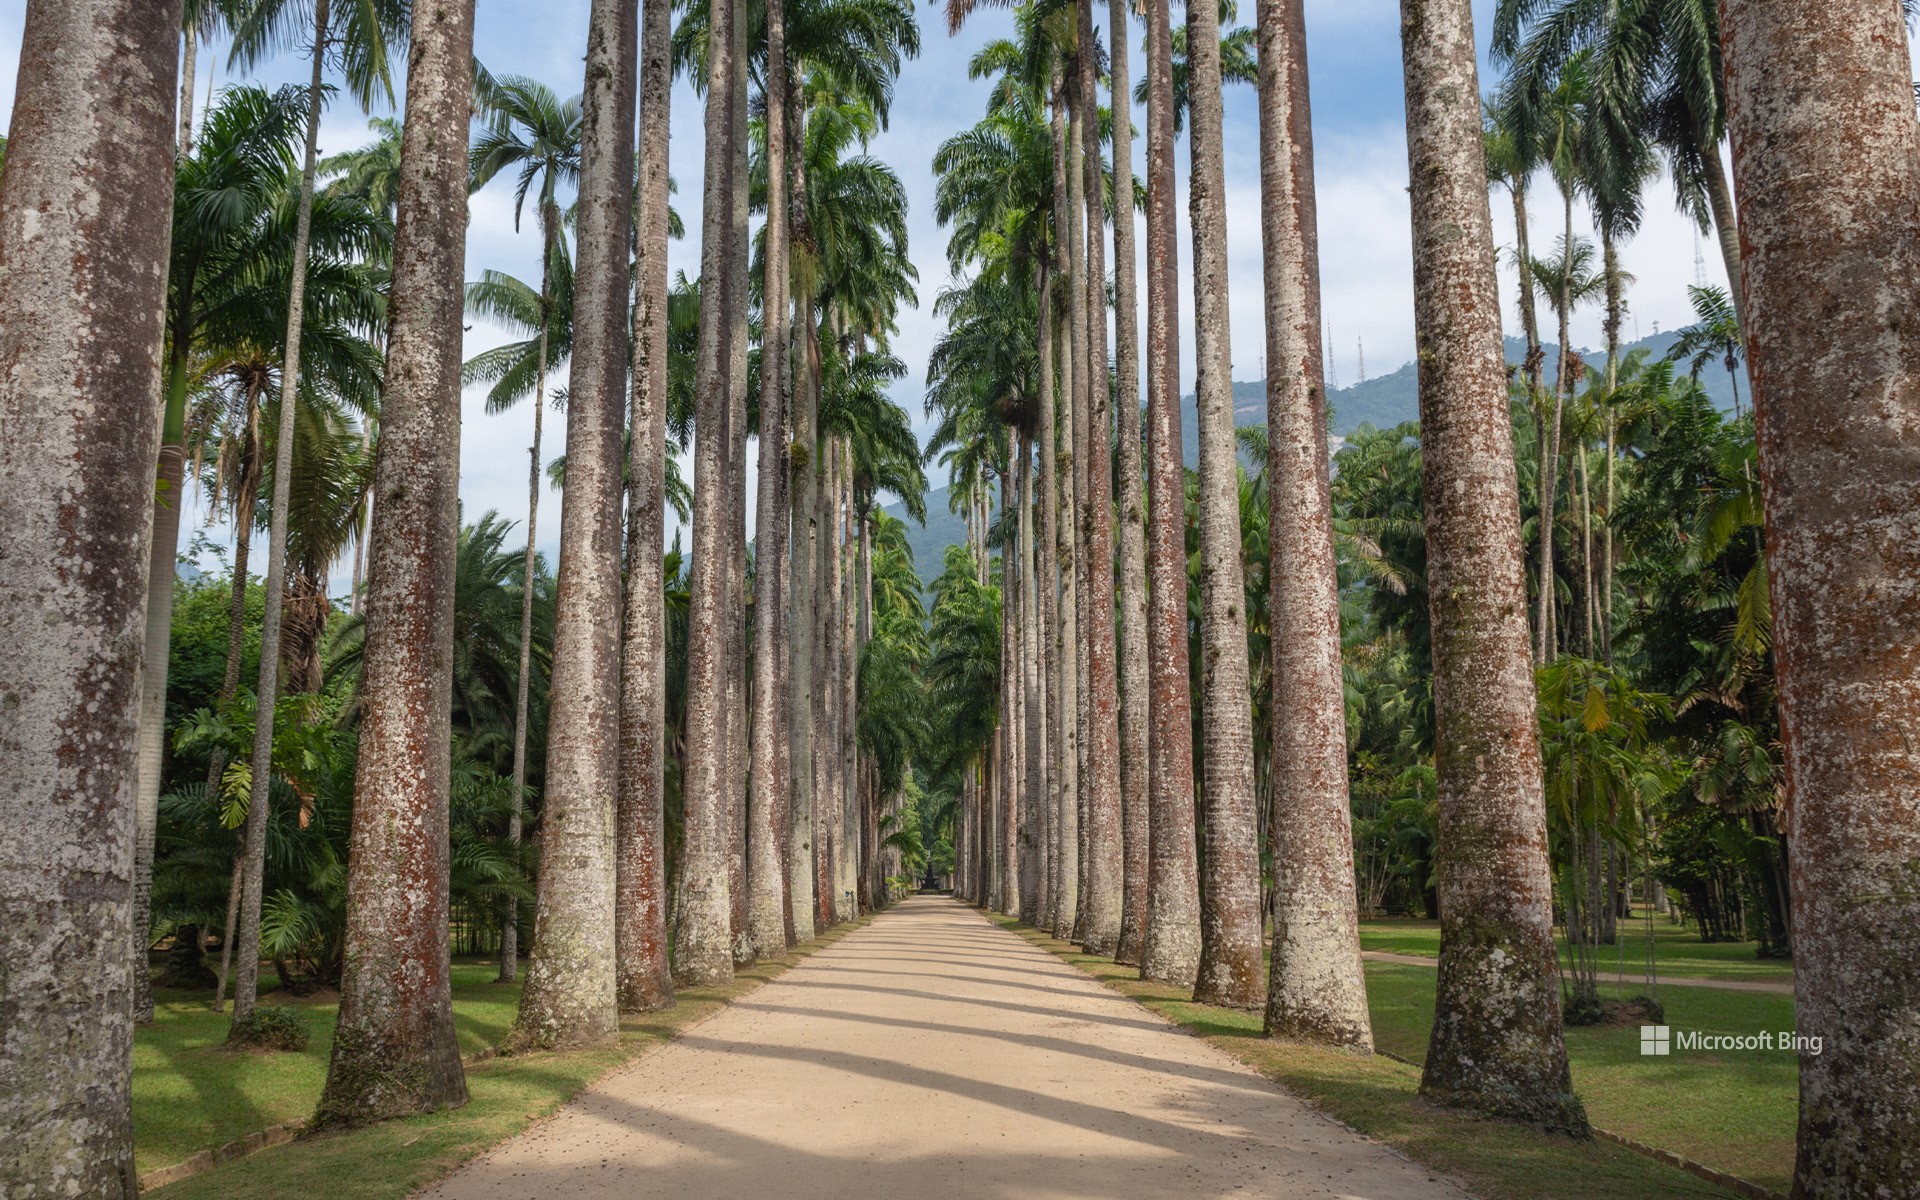 Imperial palm trees in the Rio de Janeiro Botanical Garden, Brazil